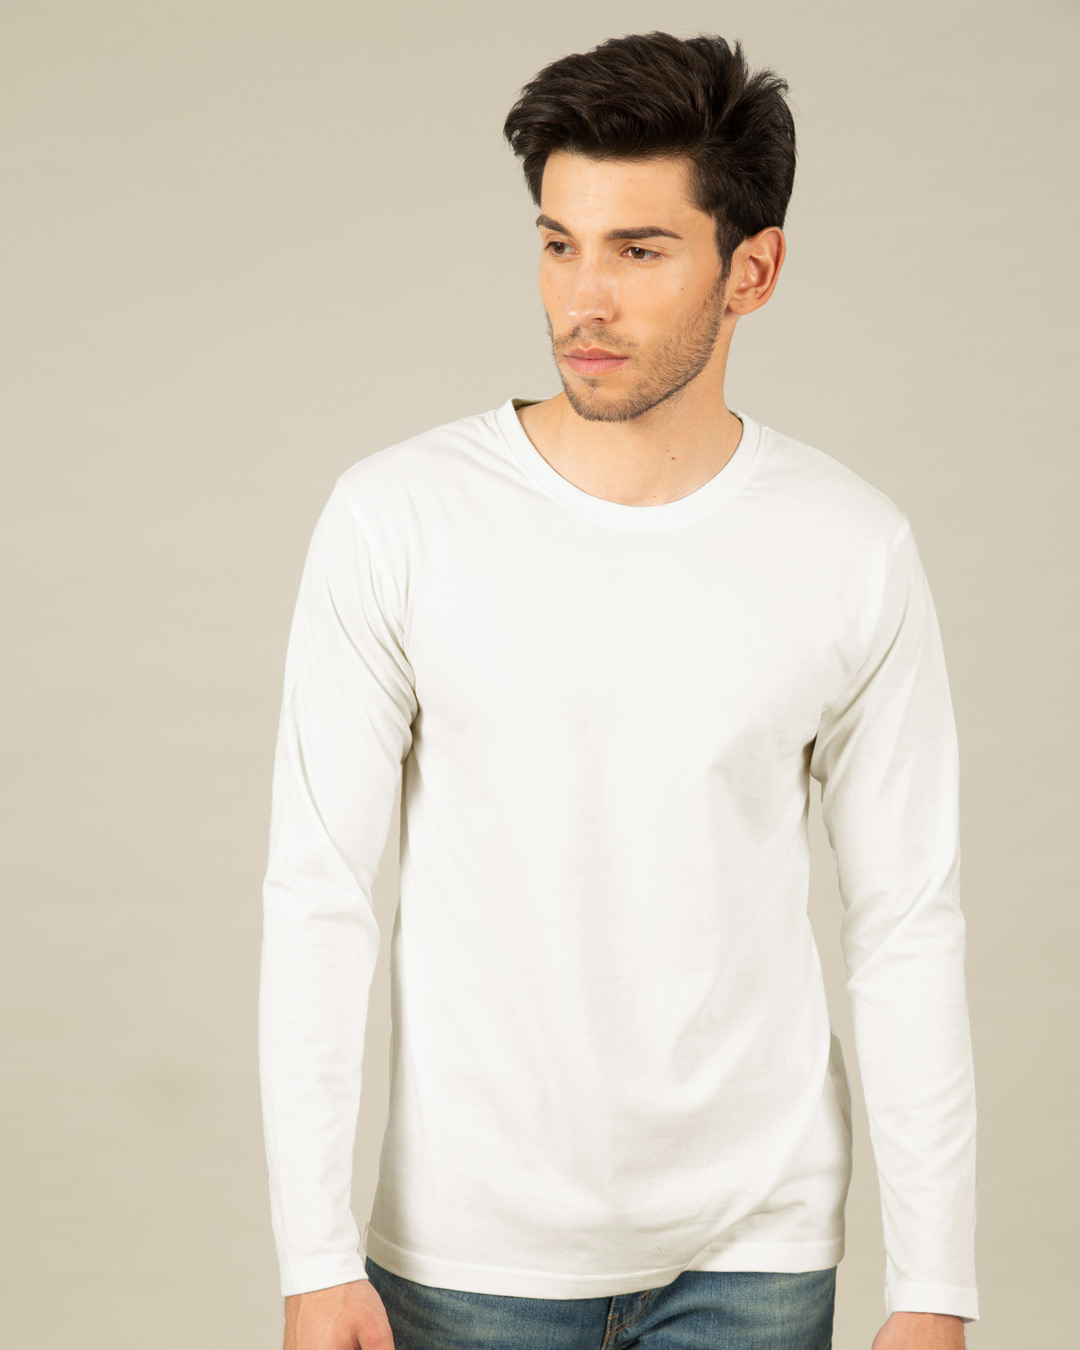 Buy Off White Full Sleeve T-Shirt for Men white Online at Bewakoof